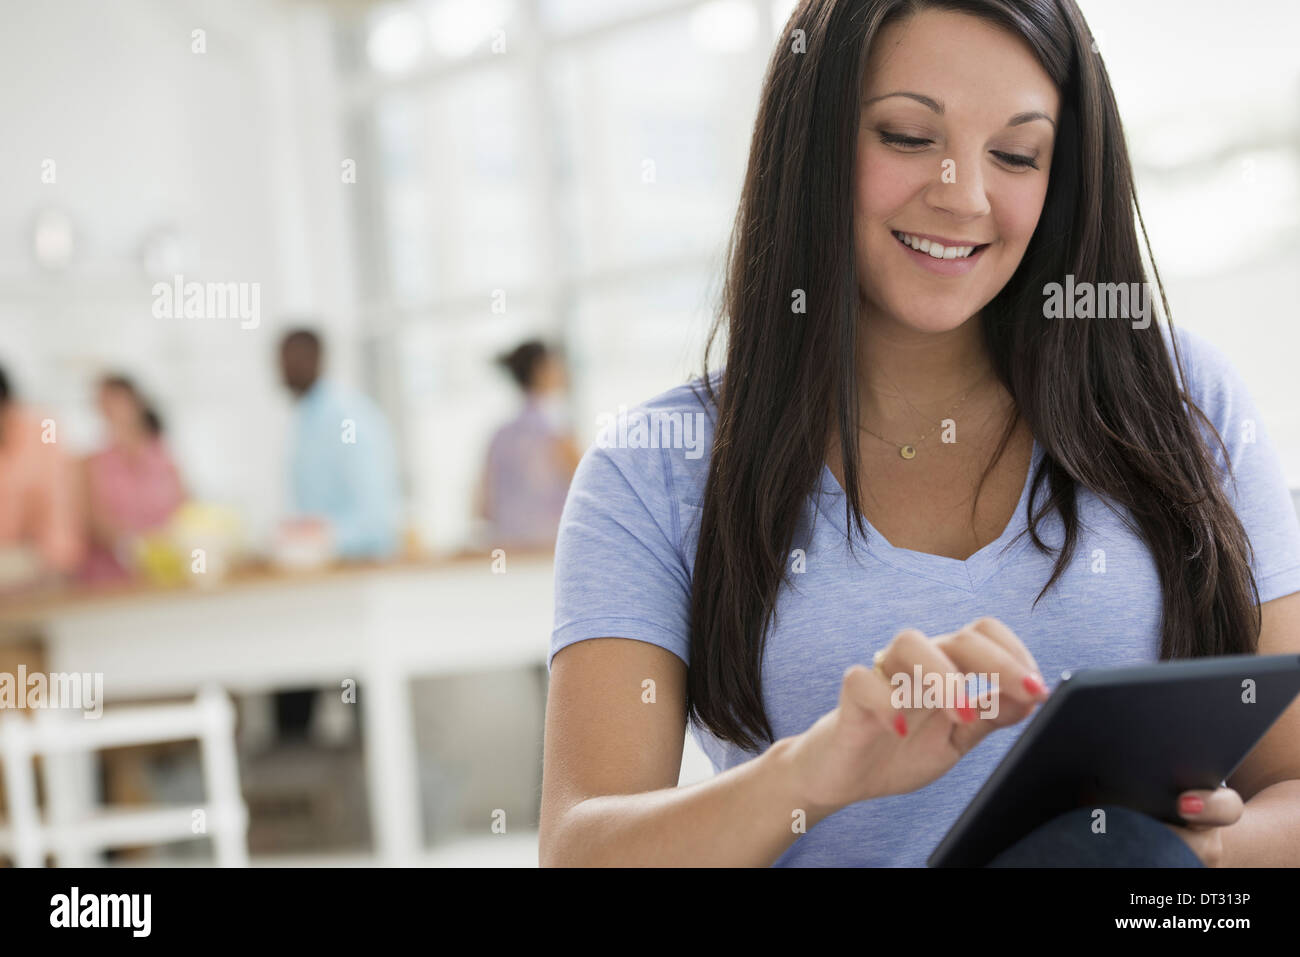 Une femme avec de longs cheveux noirs à l'aide d'une tablette numérique de personnes dans l'arrière-plan Banque D'Images